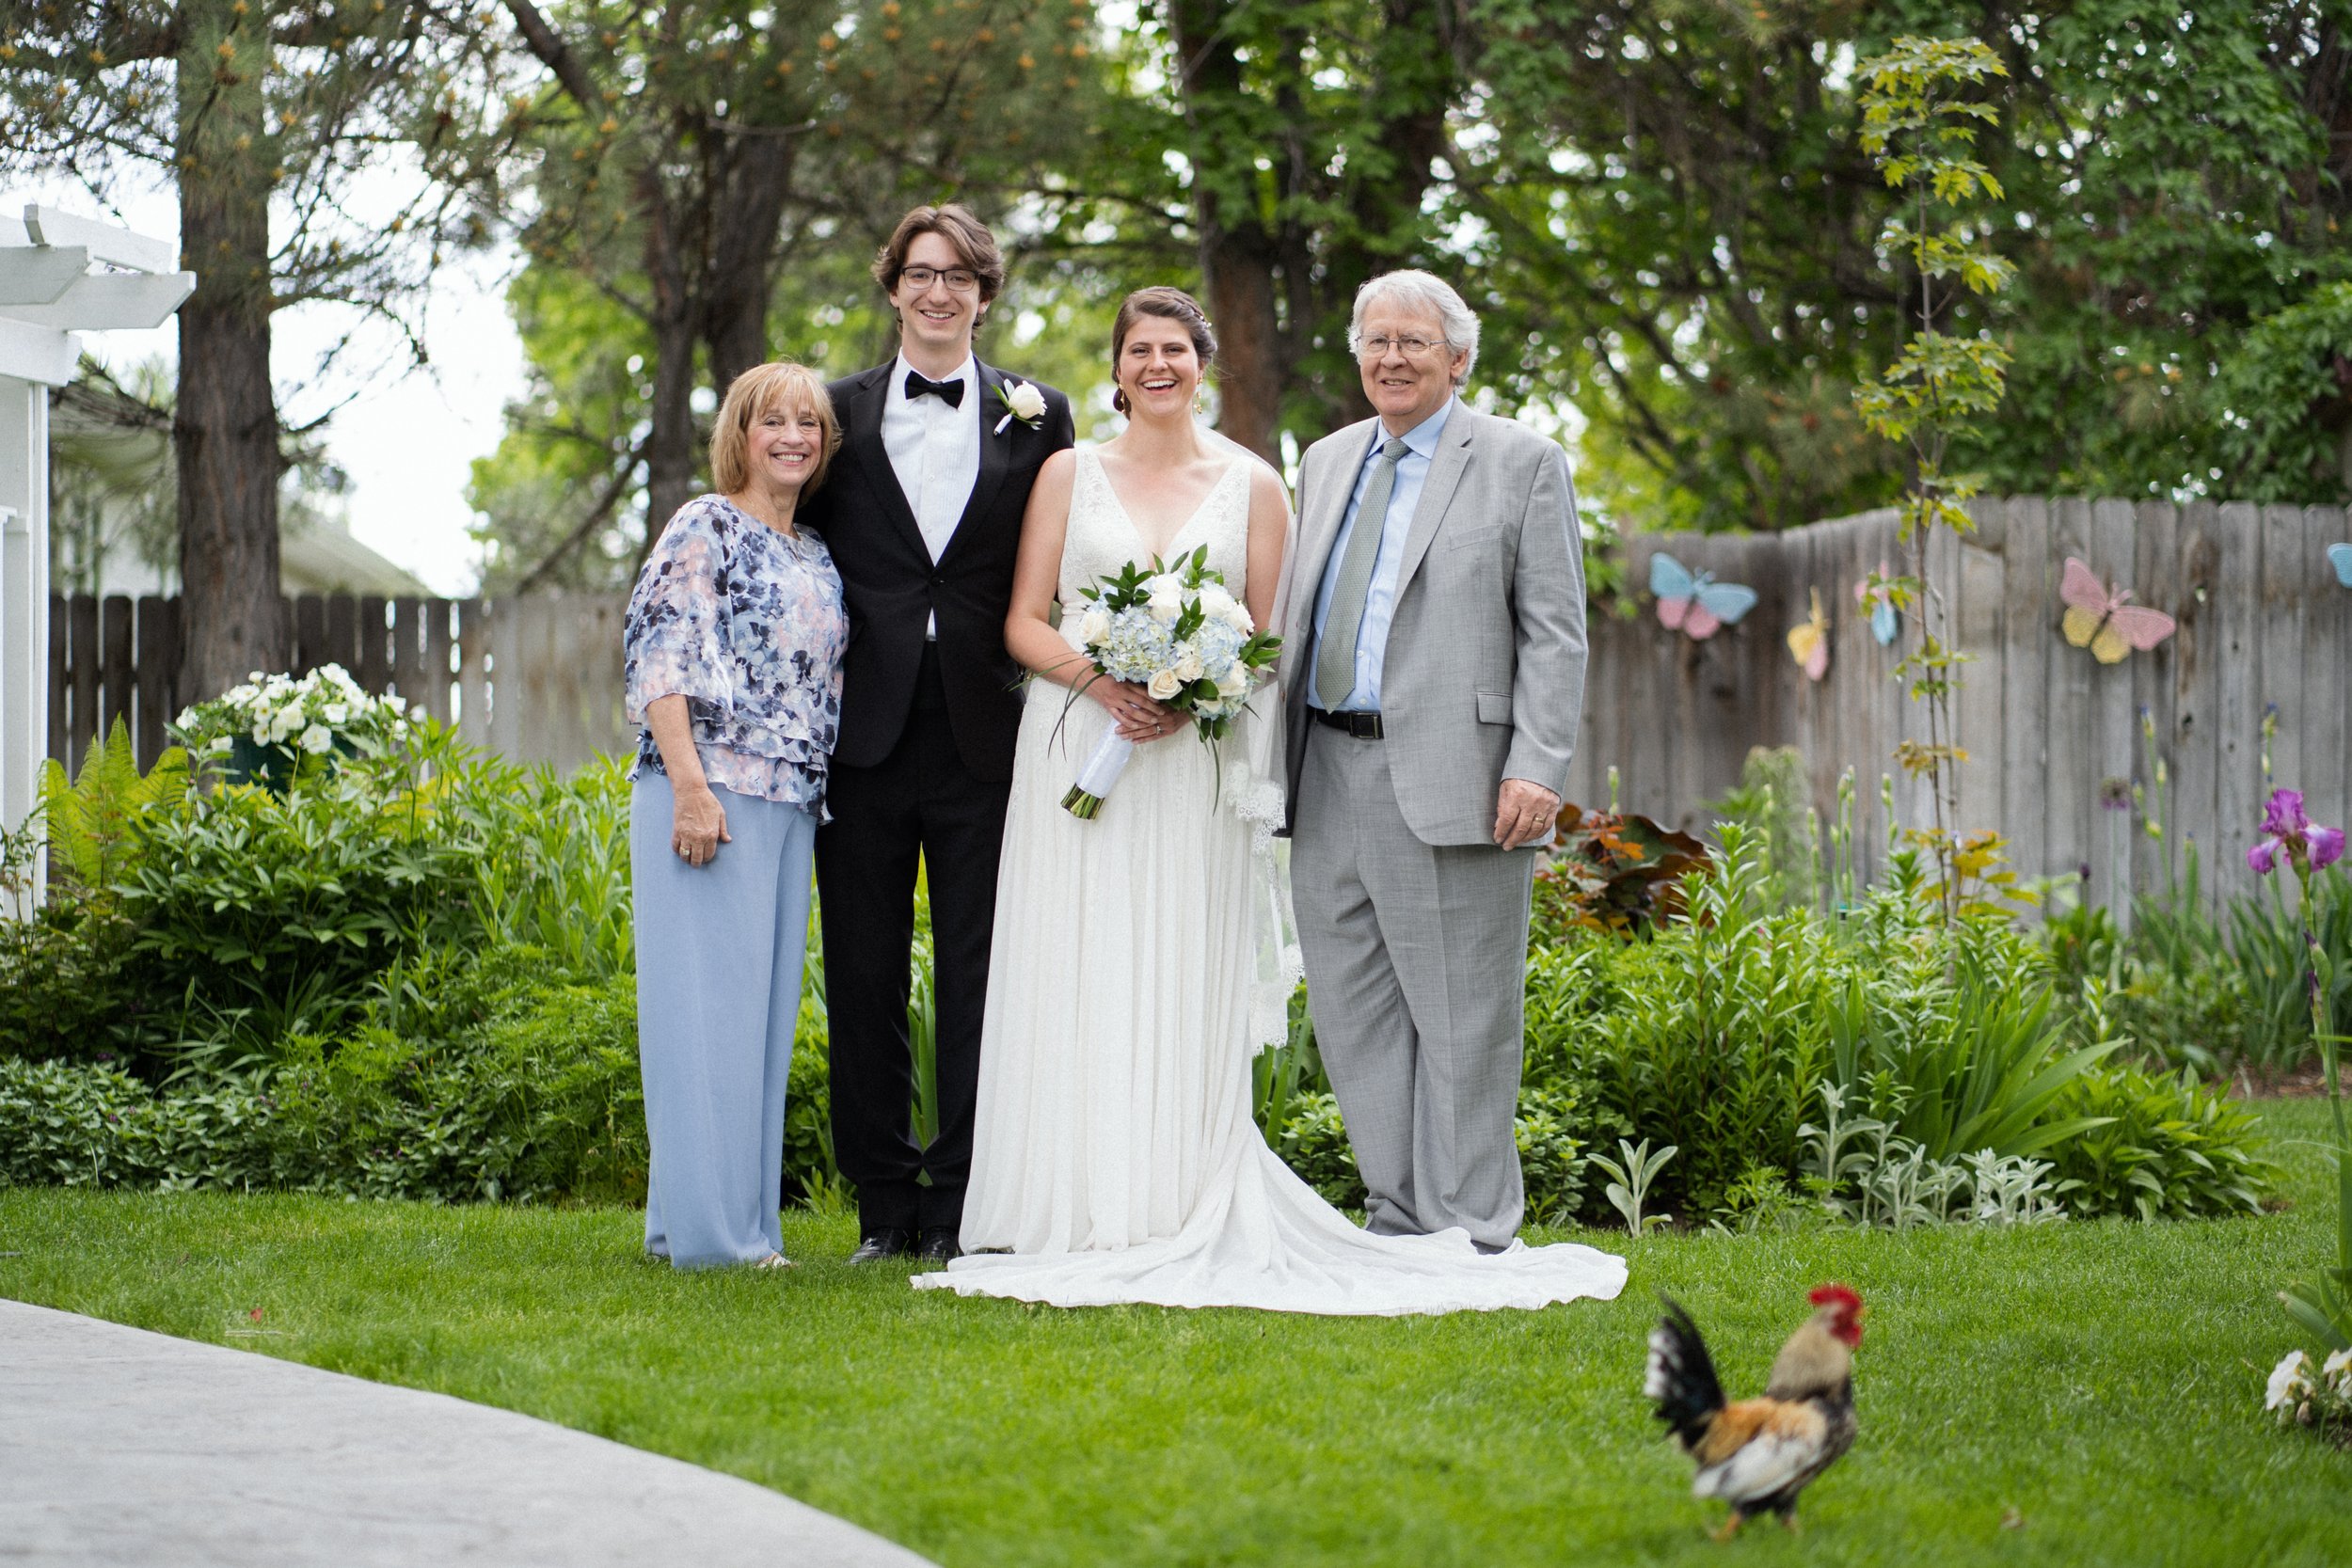 DanWalt Gardens Wedding Photos // Billings, MT Photographer // Sarah and David - C2